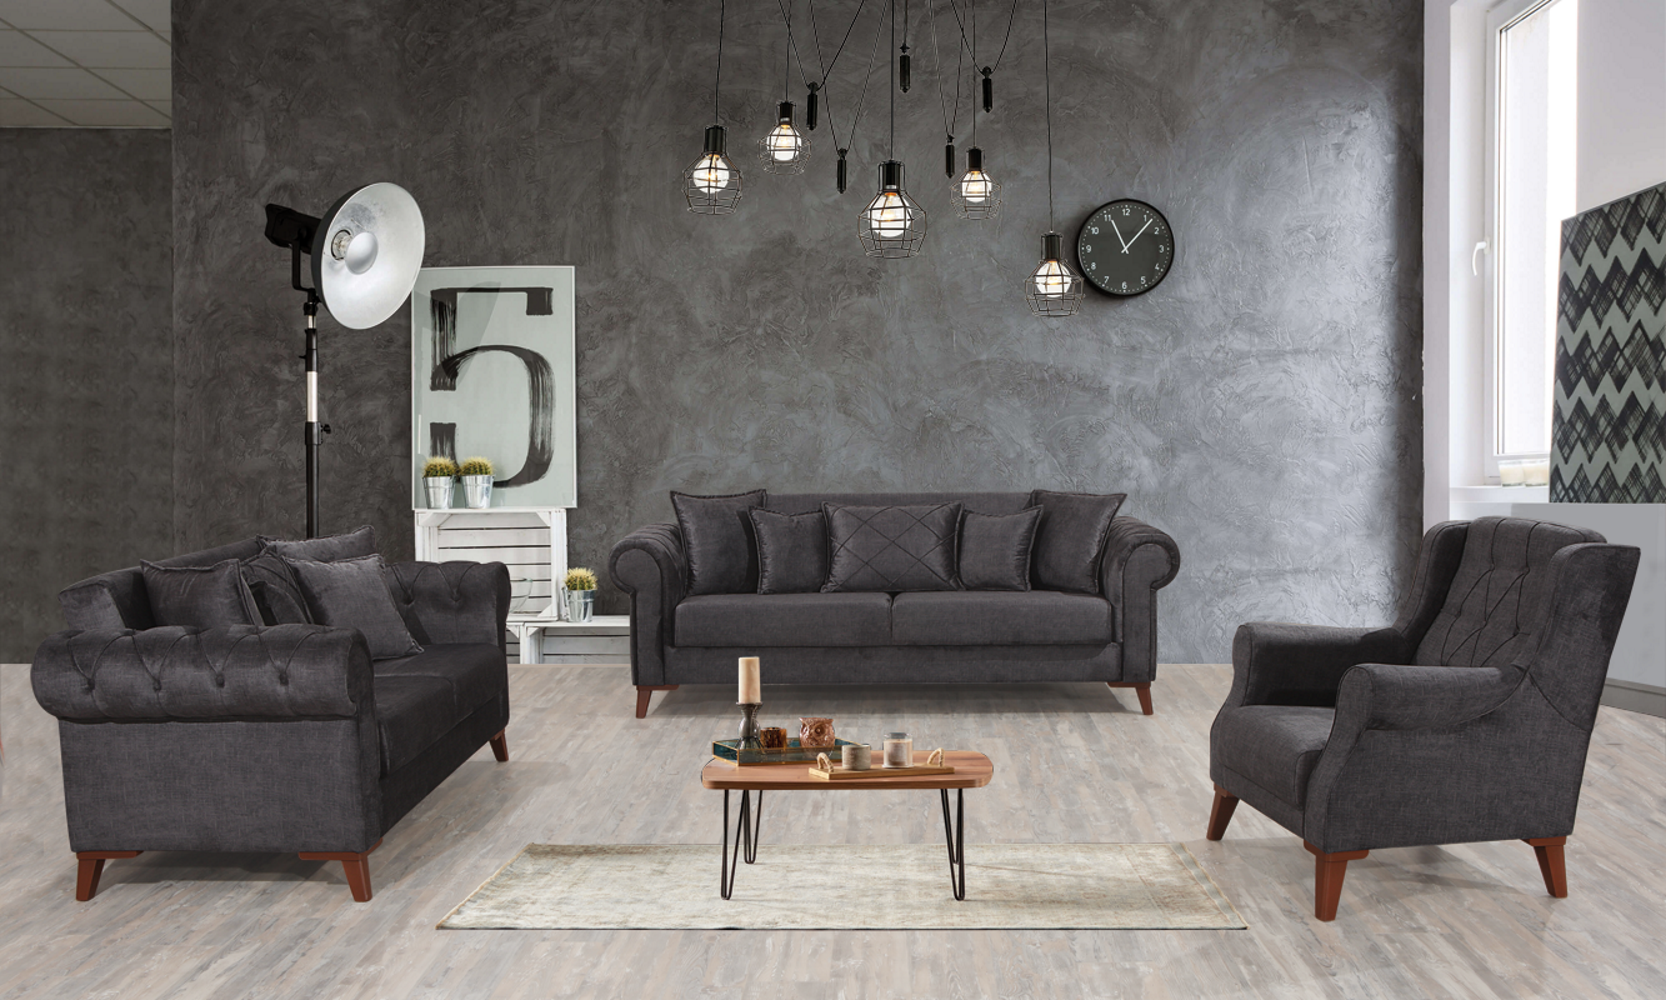 Derozzo Convertible Livingroom Loveseat Grey